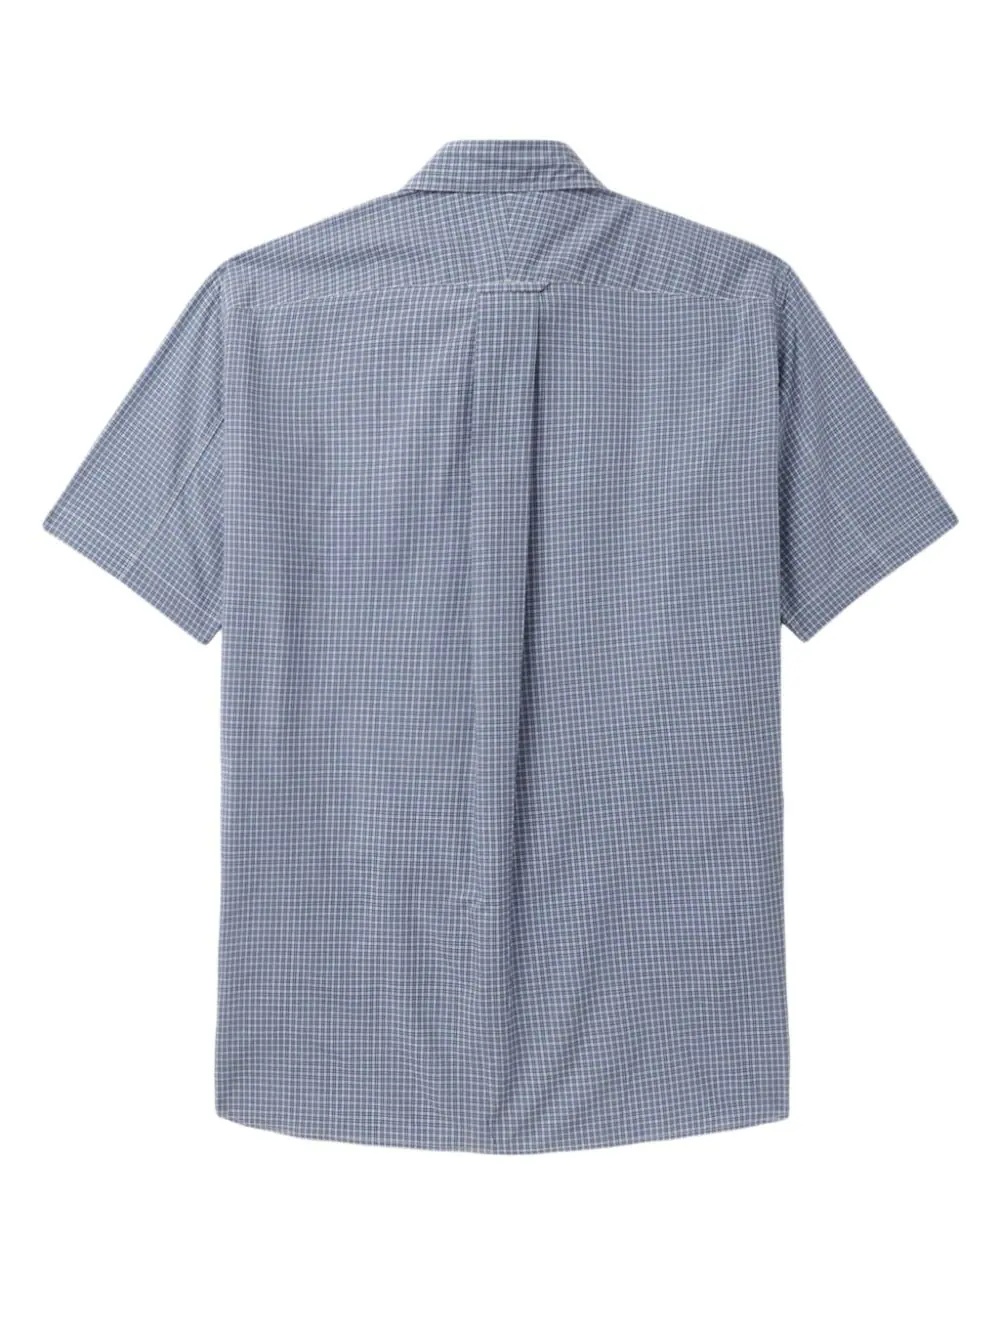 Cotton Check Stripe Shirt - 2